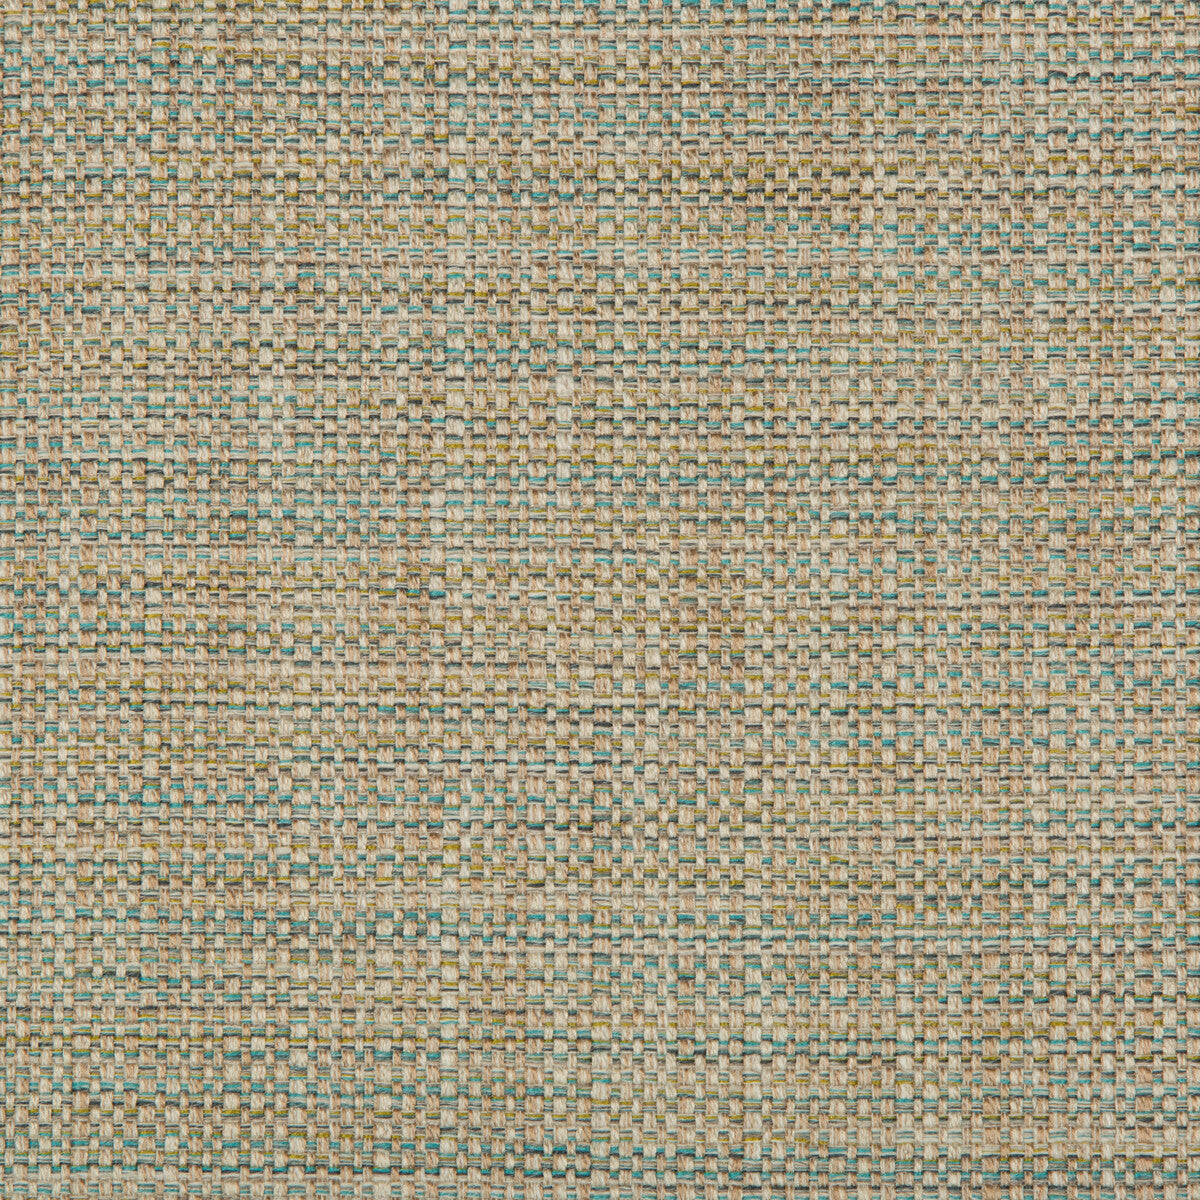 Kravet Basics fabric in 35250-316 color - pattern 35250.316.0 - by Kravet Basics